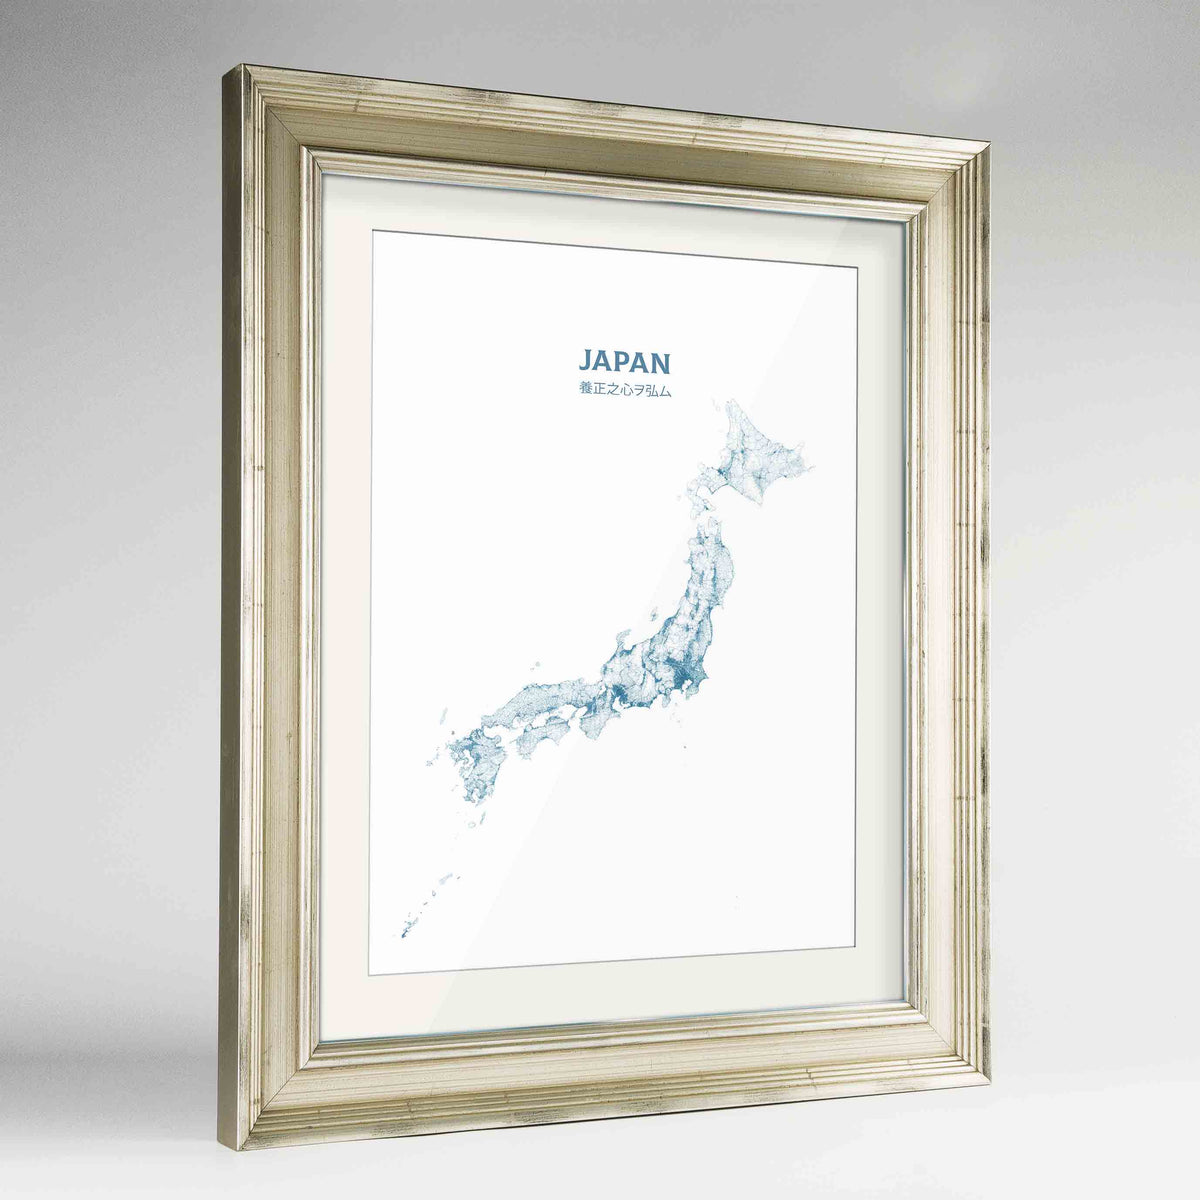 Japan - All Roads Art Print - Framed